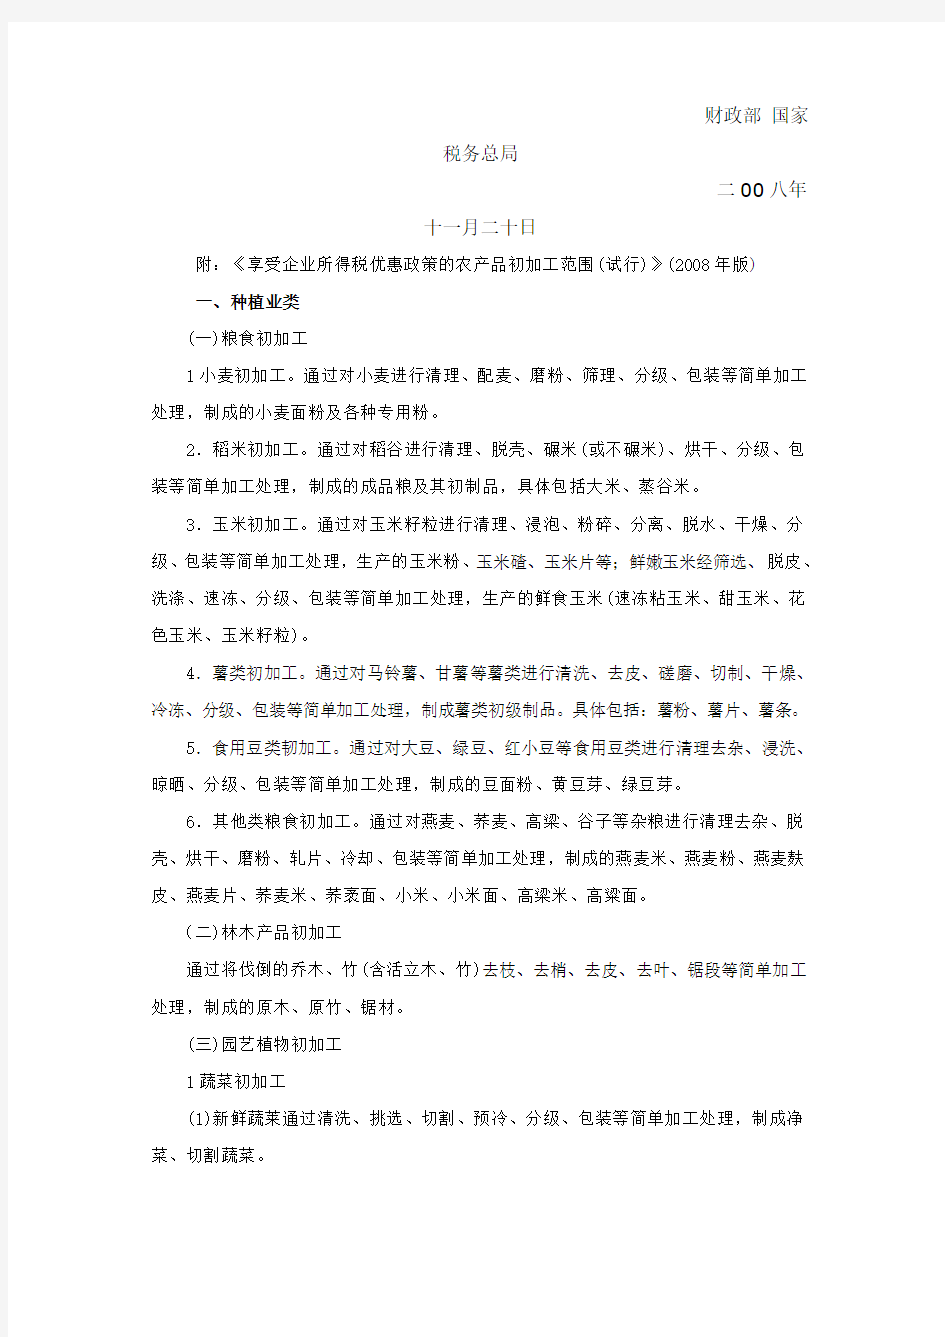 合作社免所得税的基本材料介绍(云南)